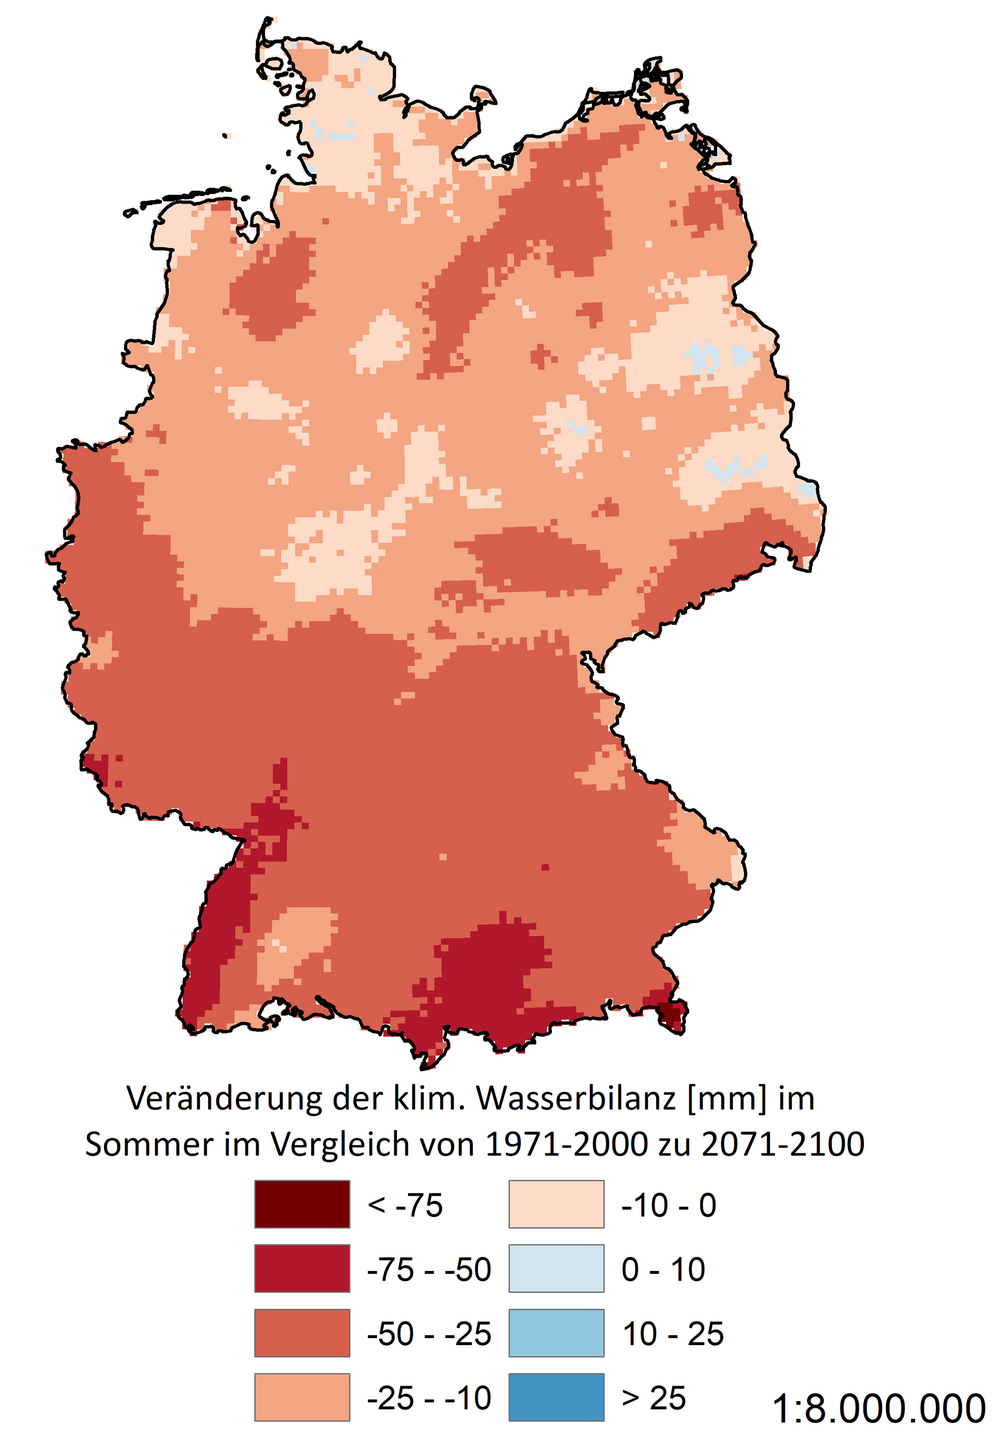 Eine Deutschlandkarte zeigt die Veränderung der klimatischen Wasserbilanz im Sommer unter dem Klimaszenario „Kein Klimaschutz“ (RCP 8.5).